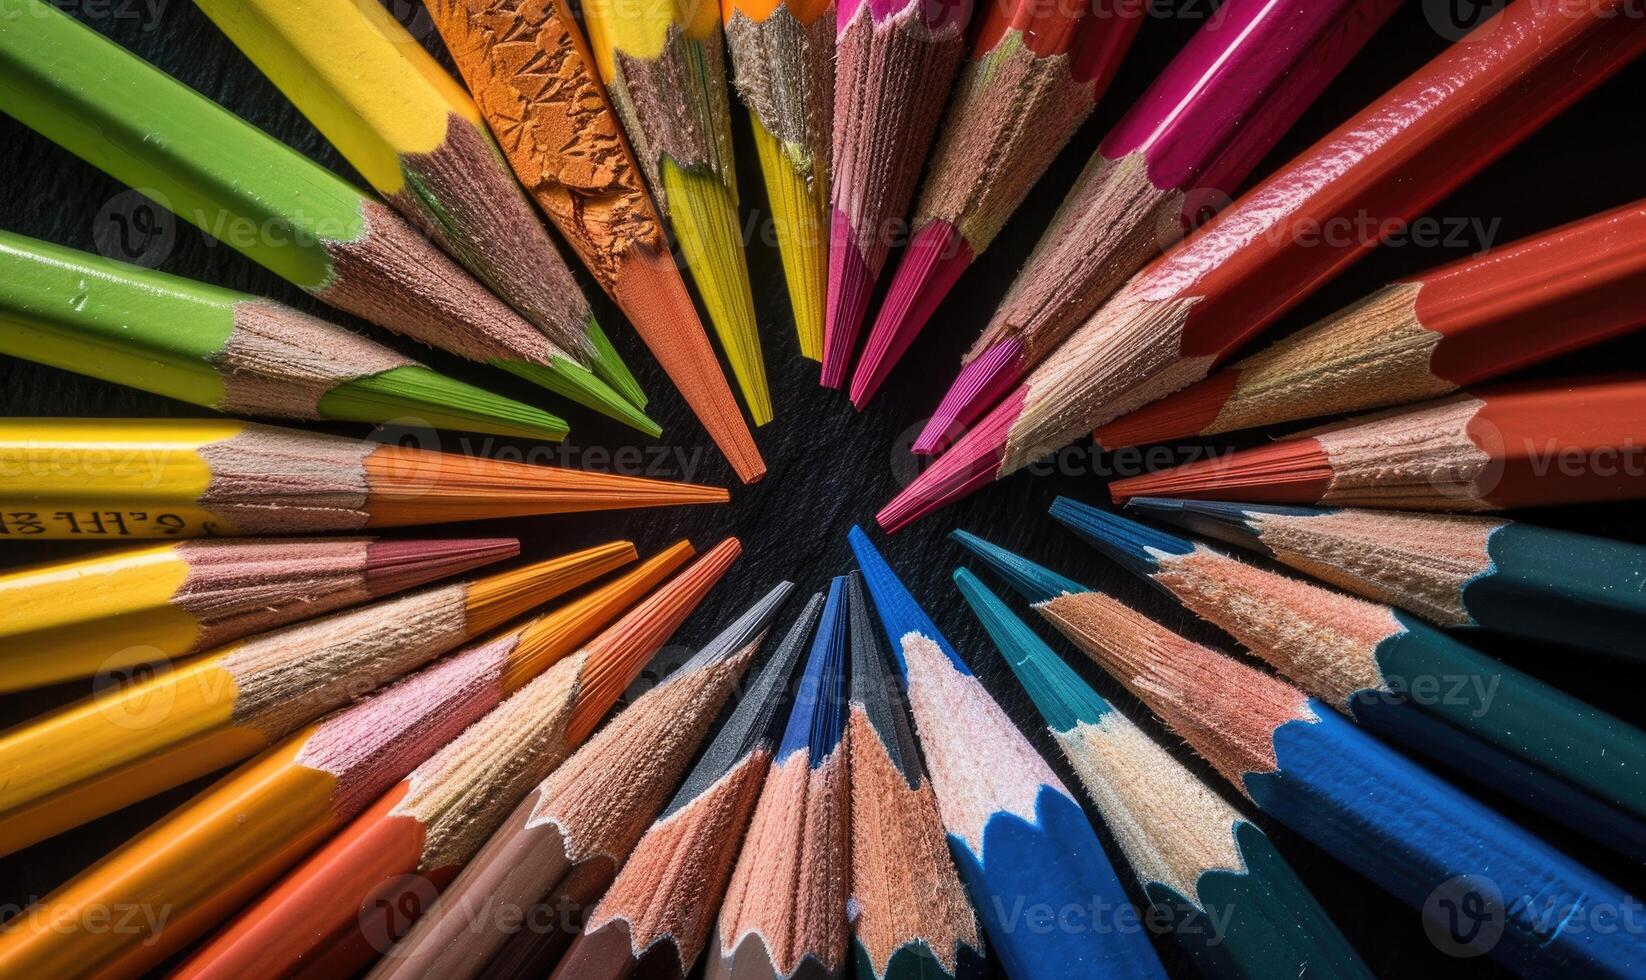 färgad pennor anordnad i en cirkulär mönster foto